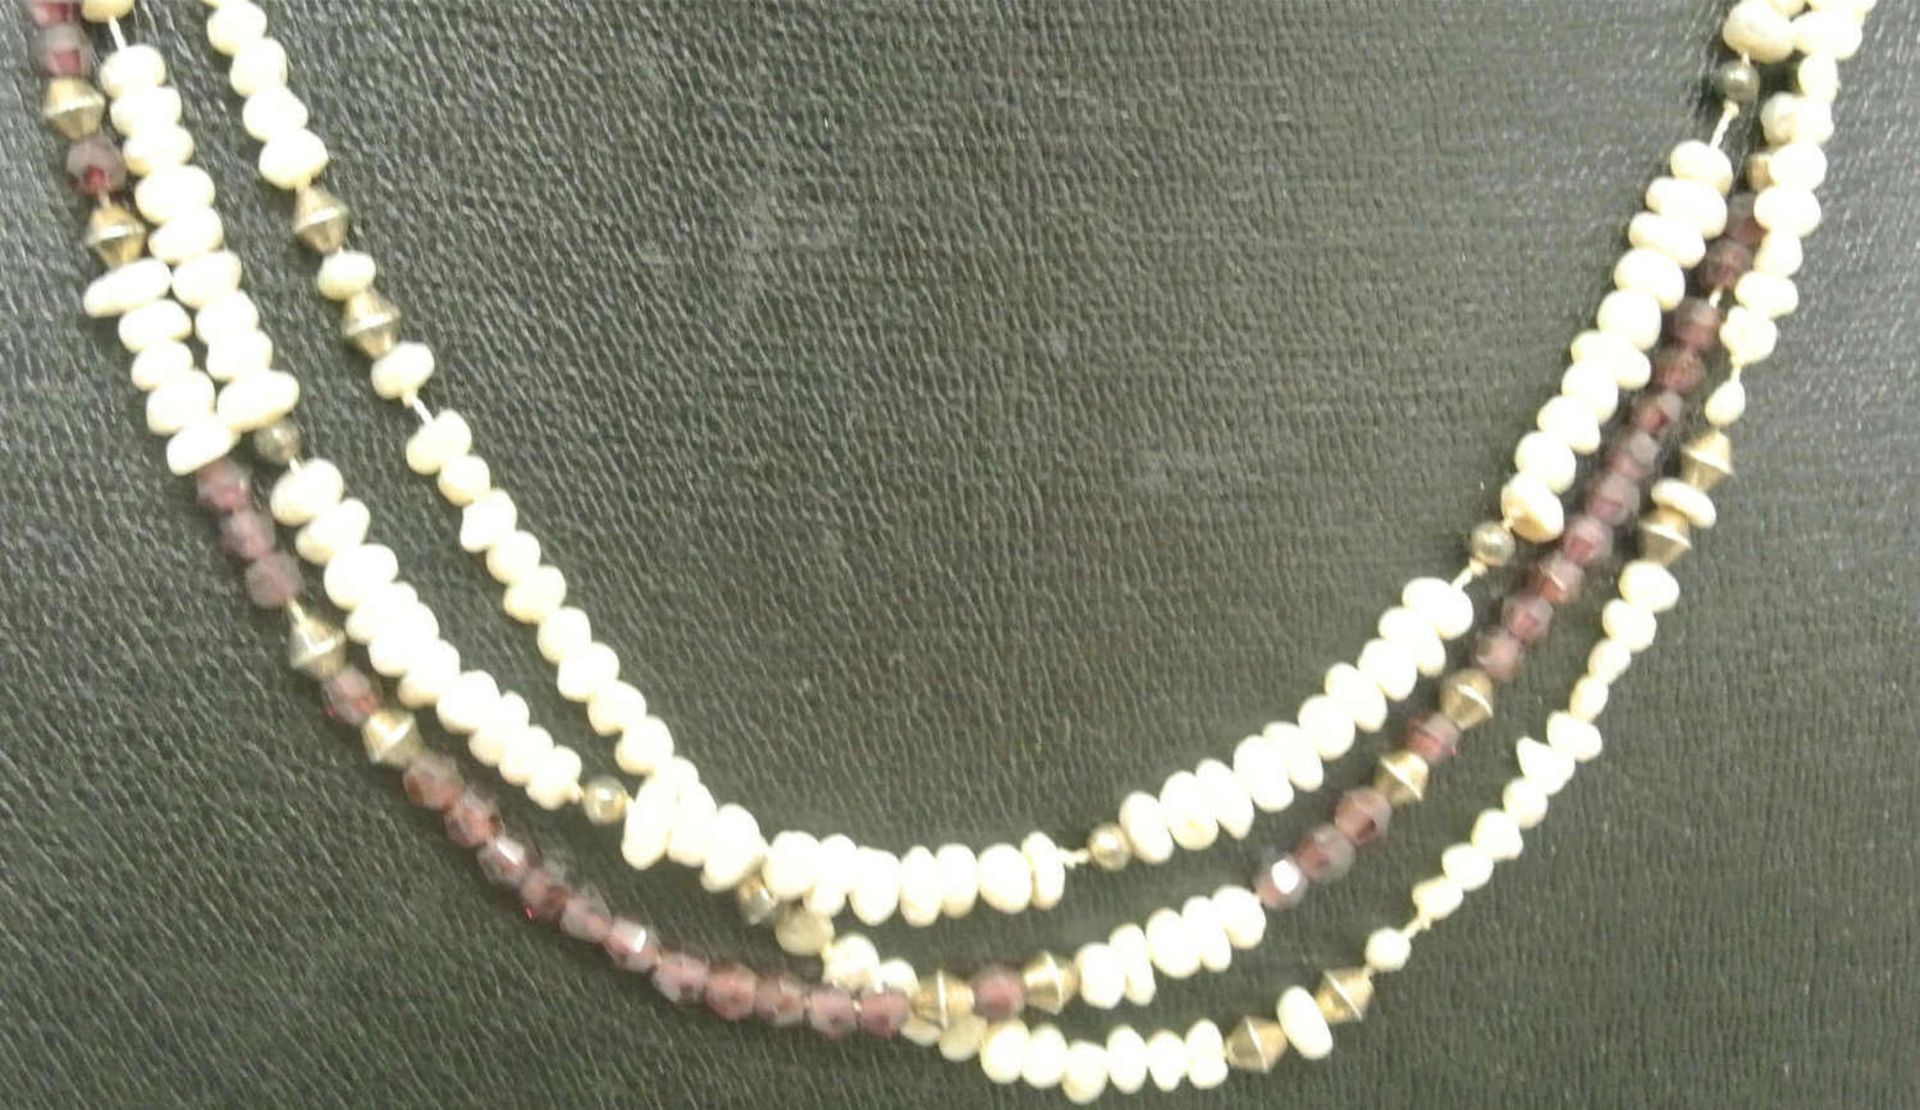 3-reihige Kette mit Perlen, Silber und Amethysten gefaßt. Länge ca. 50 cm - Bild 2 aus 2